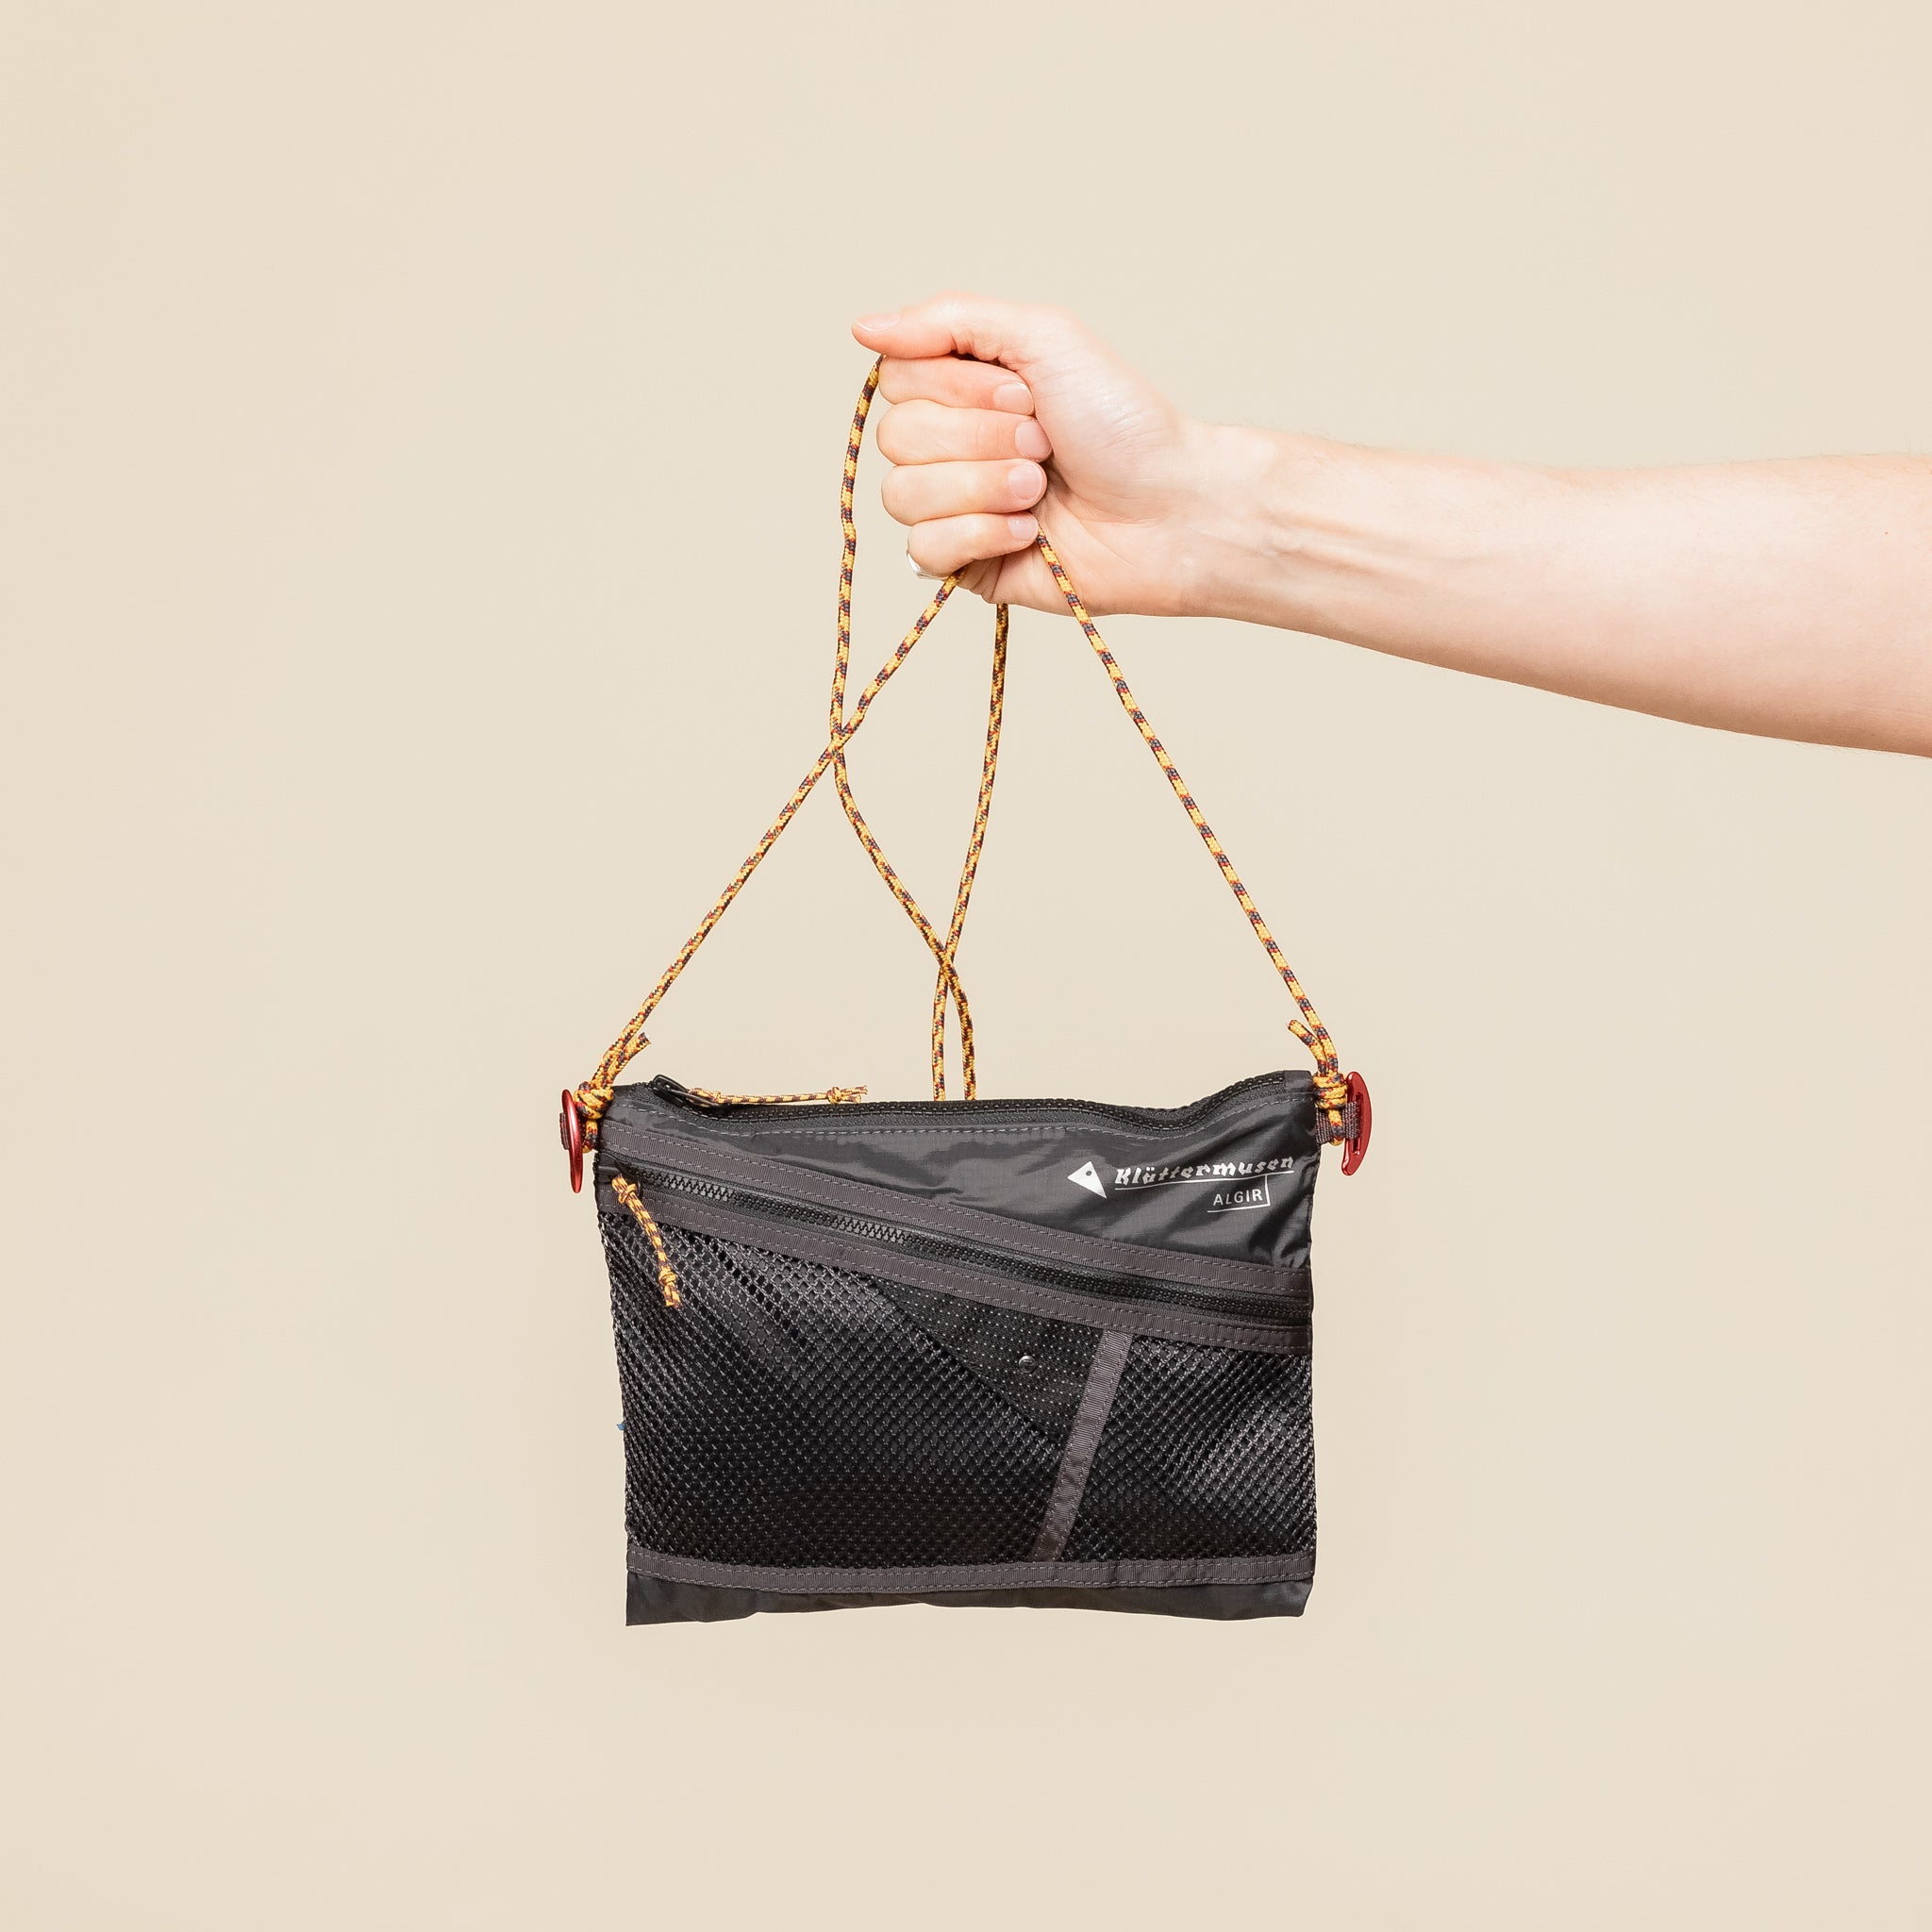 Klättermusen - Algir Accessory Bag Medium - Raven Black